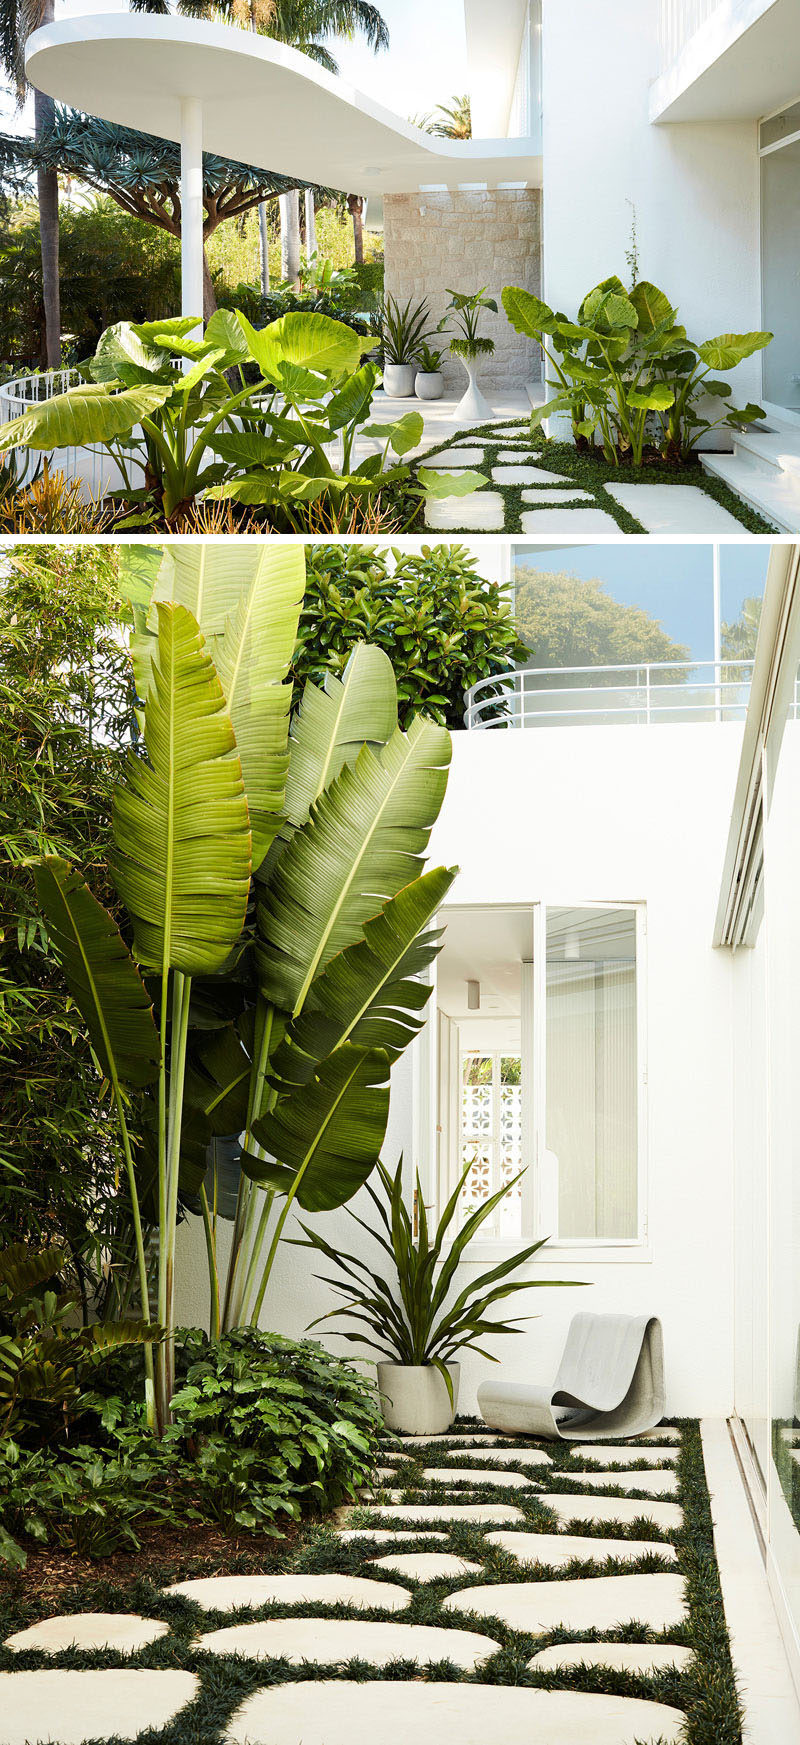 В этом доме чувствуется влияние работ бразильского архитектора Оскара Нимейера, например, пышная форма бетонного навеса, закрывающий вход. # Ландшафтный дизайн # Архитектура # Современный дом